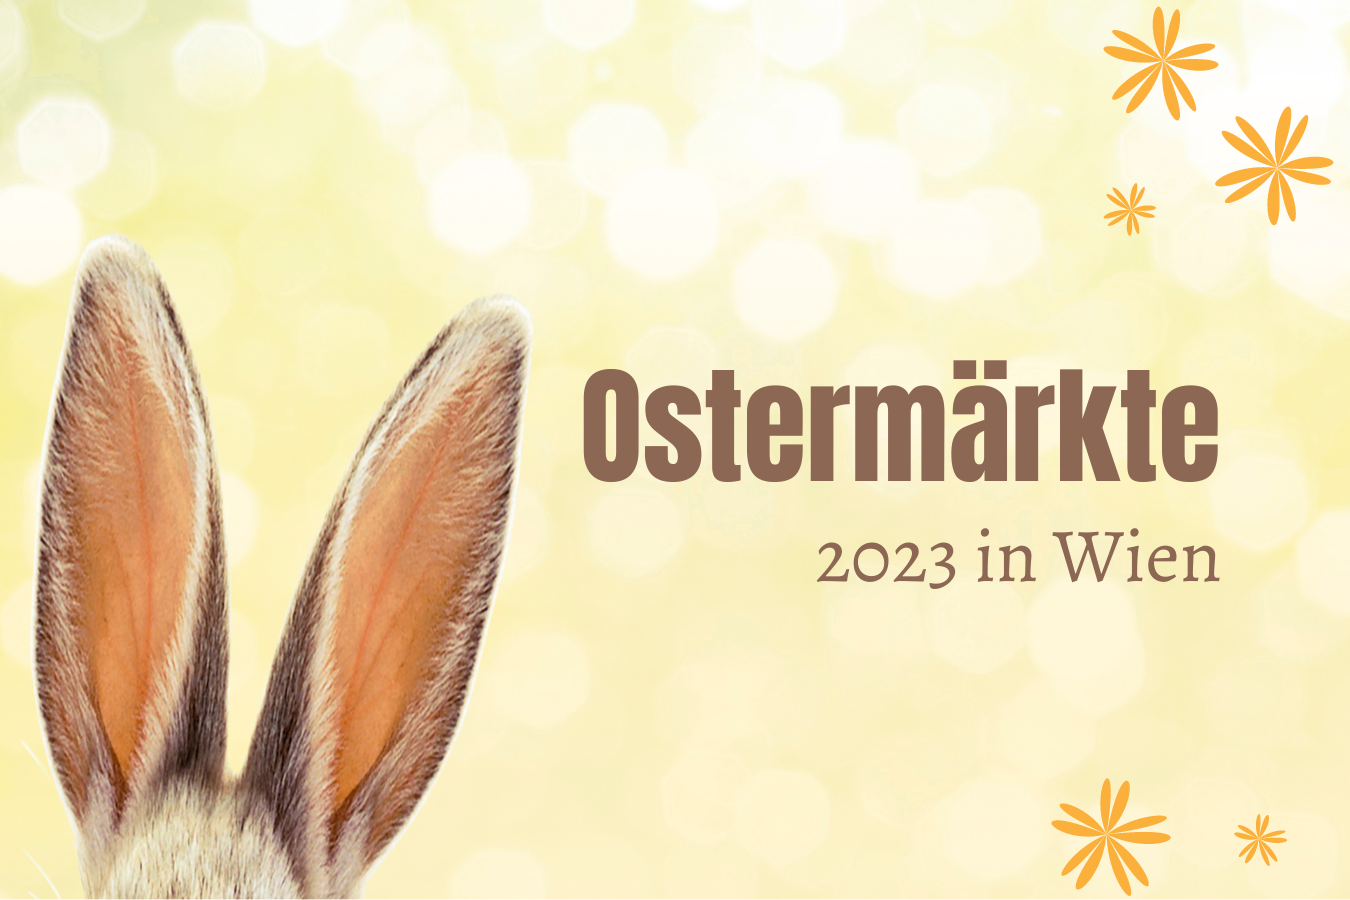 Ostermärkte 2023 in Wien